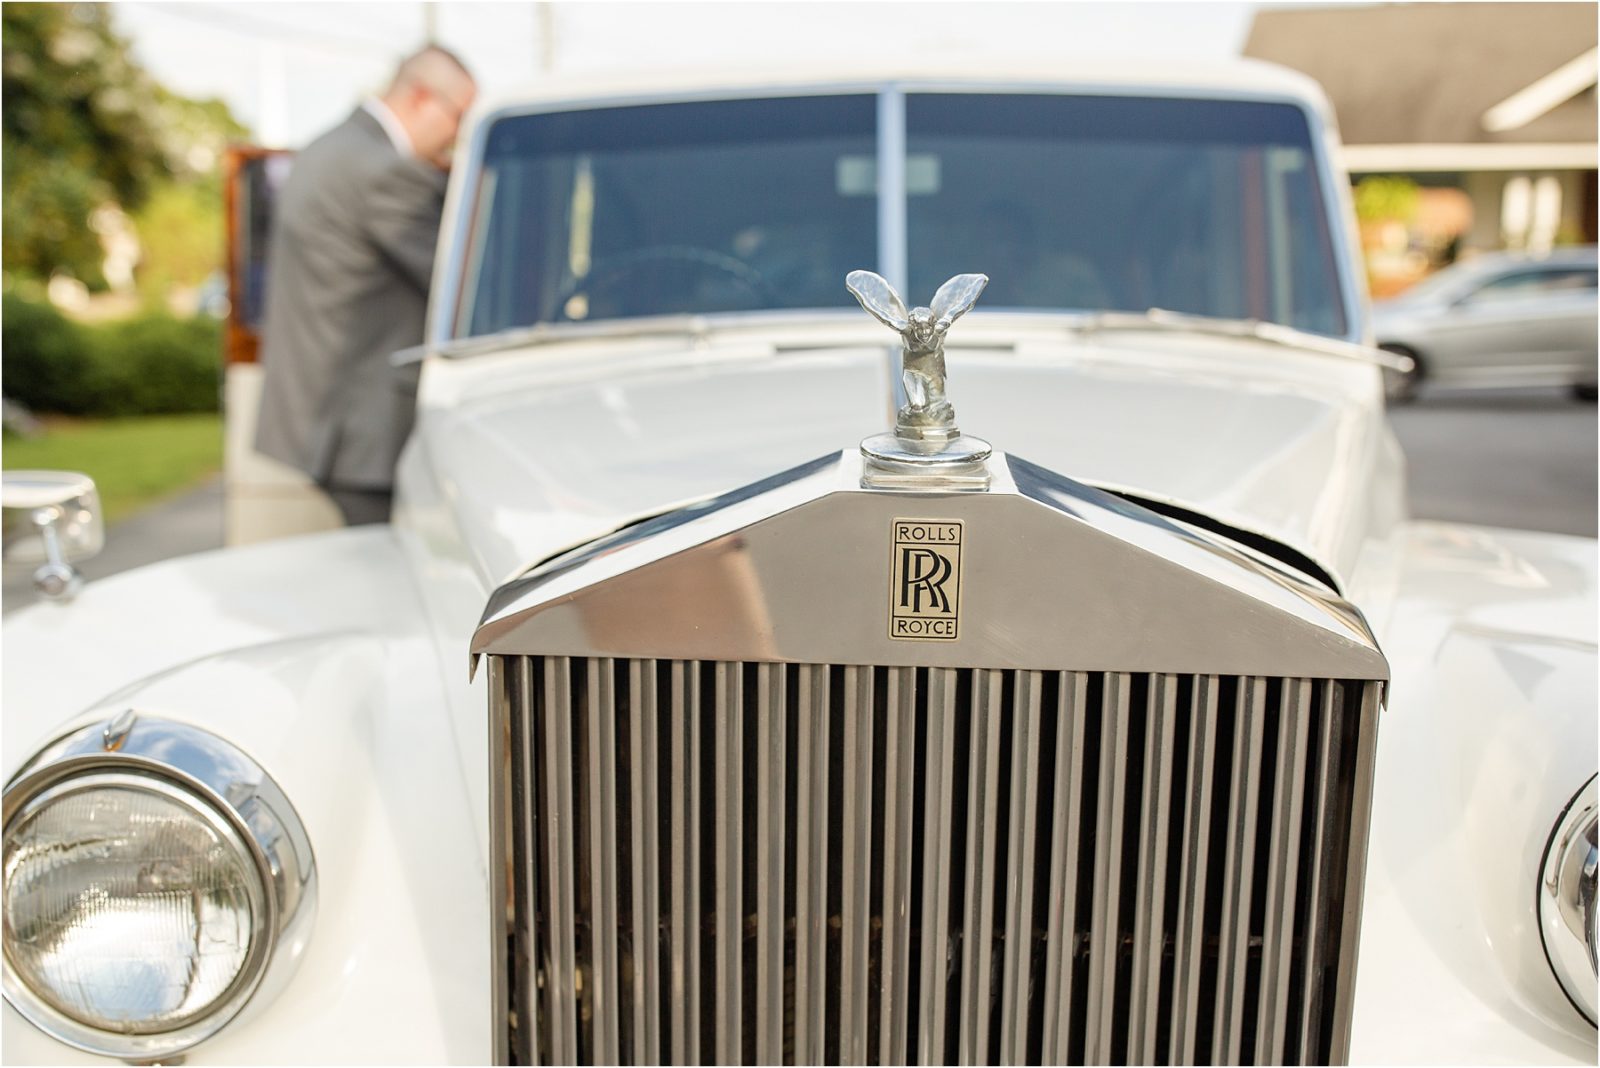 Rolls Royce car at a wedding